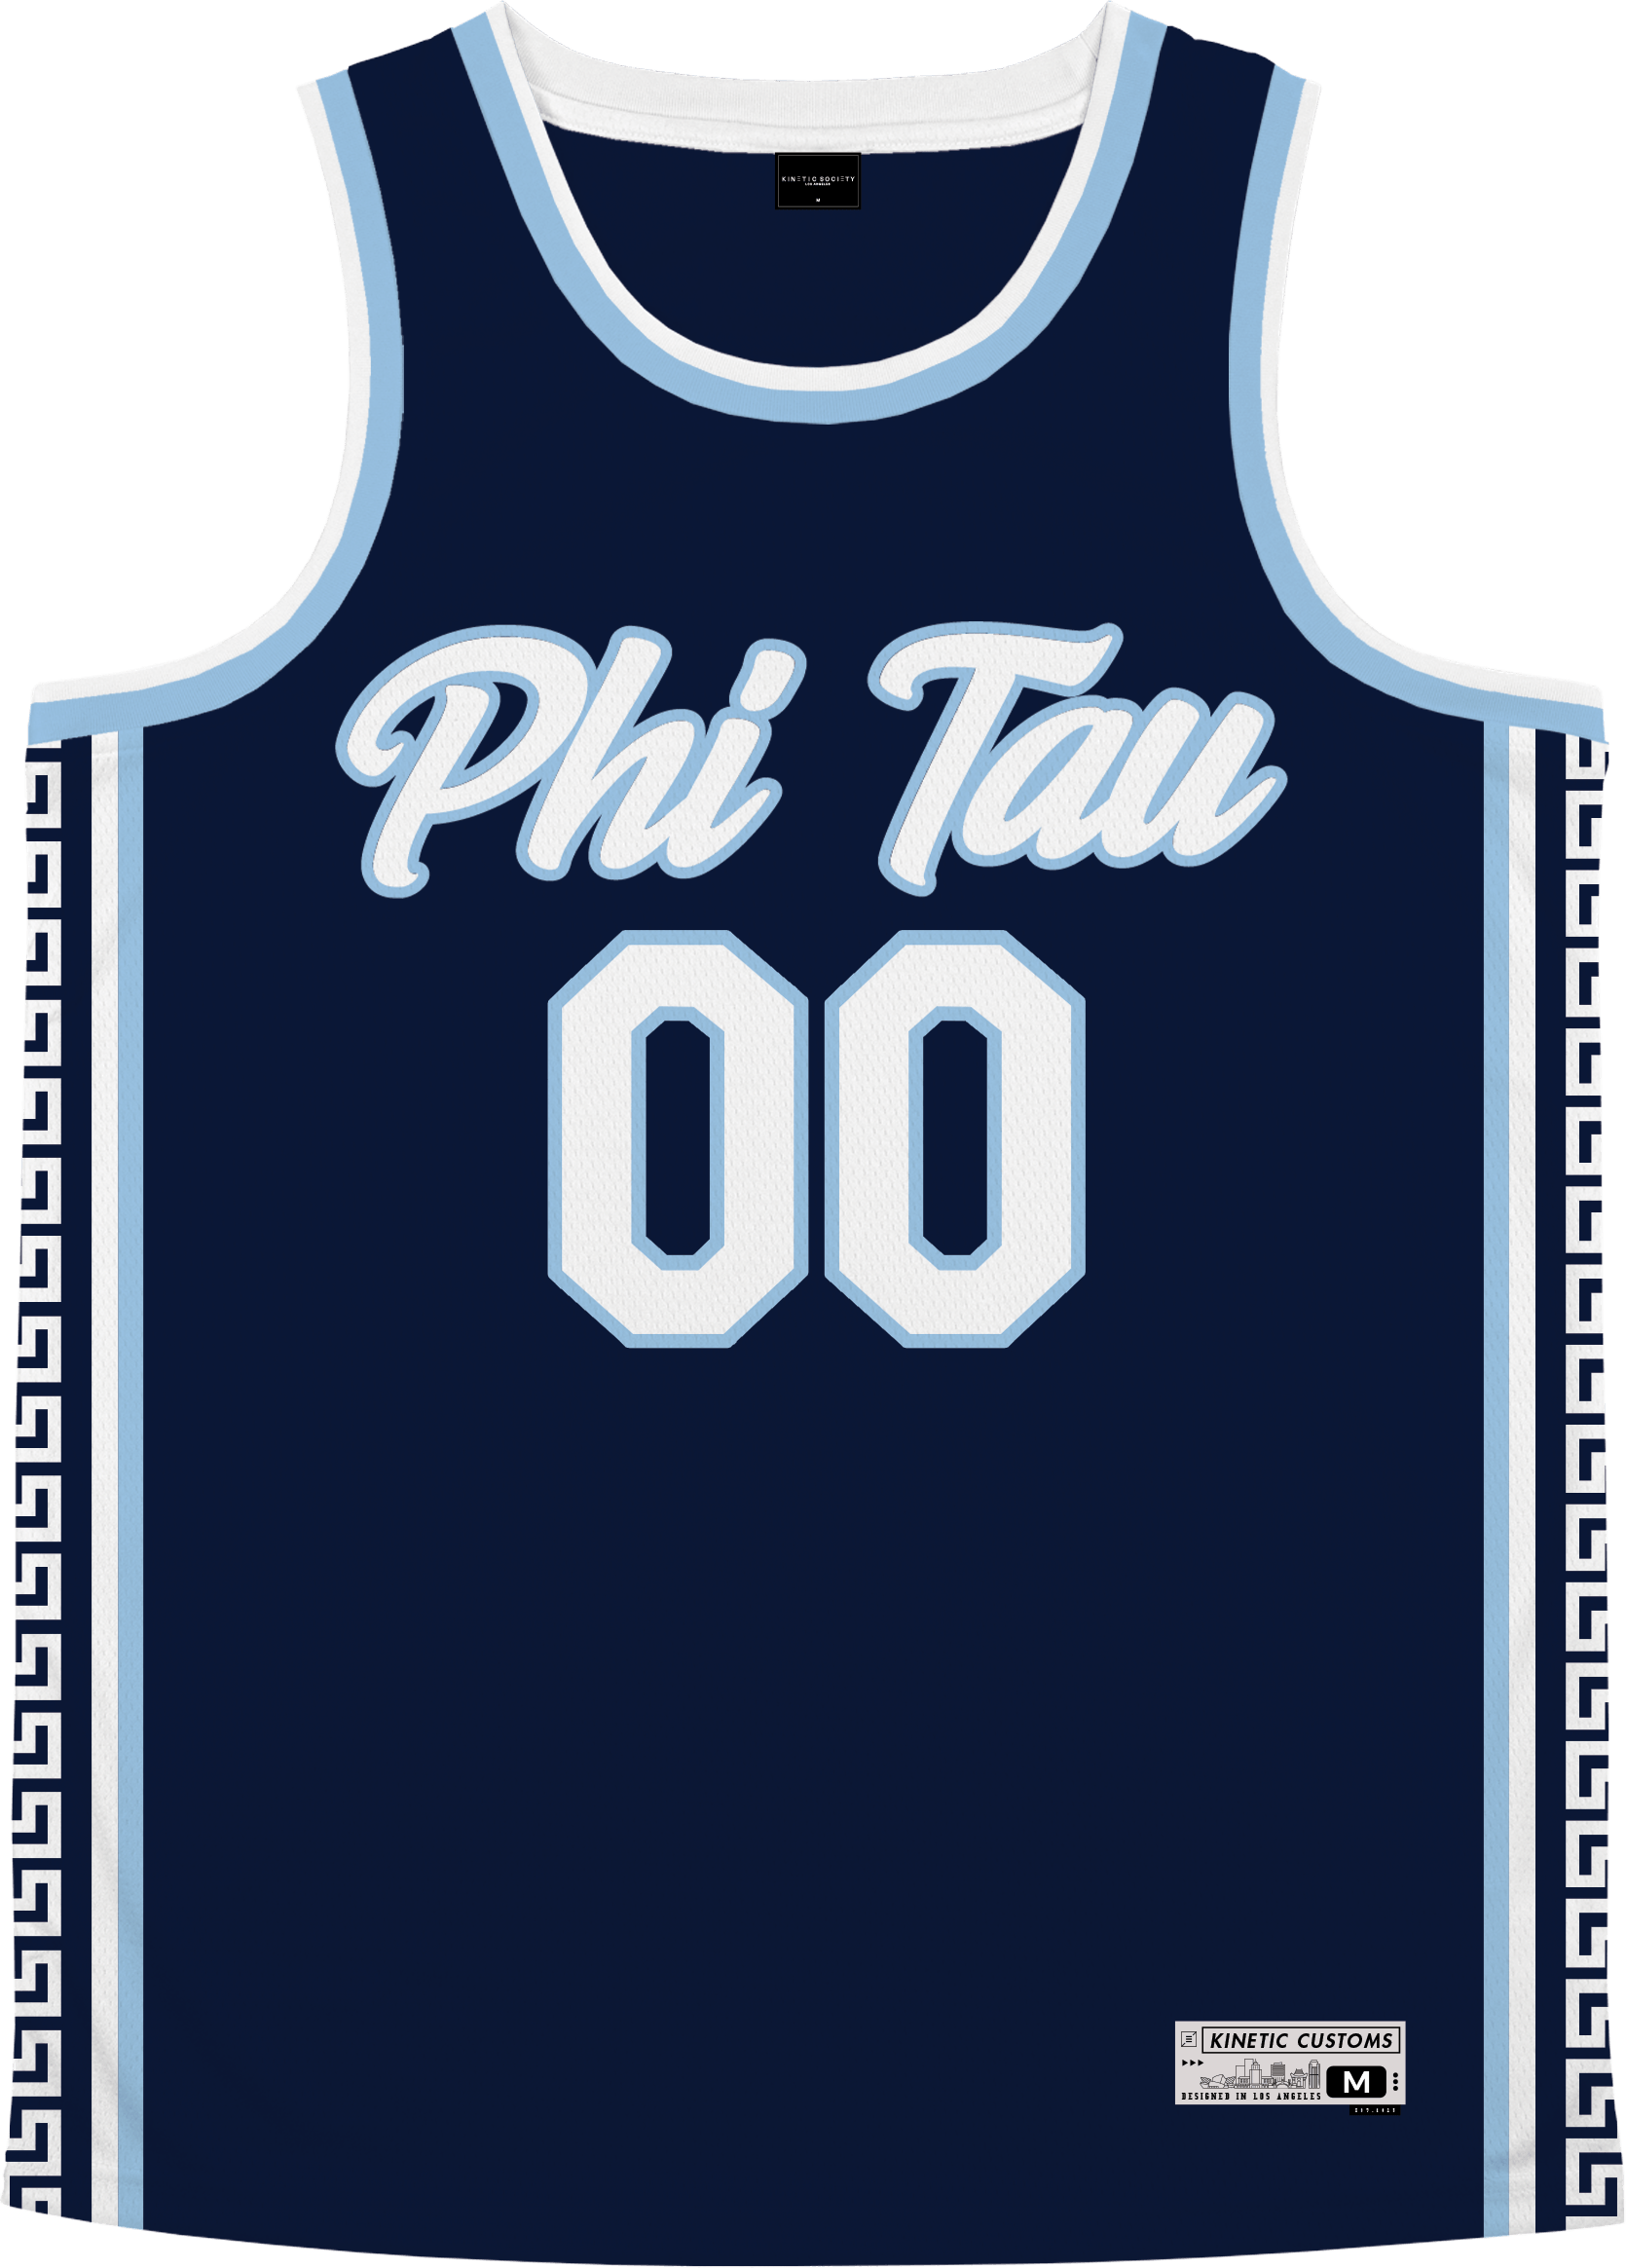 Phi Kappa Tau - Templar Basketball Jersey - Kinetic Society